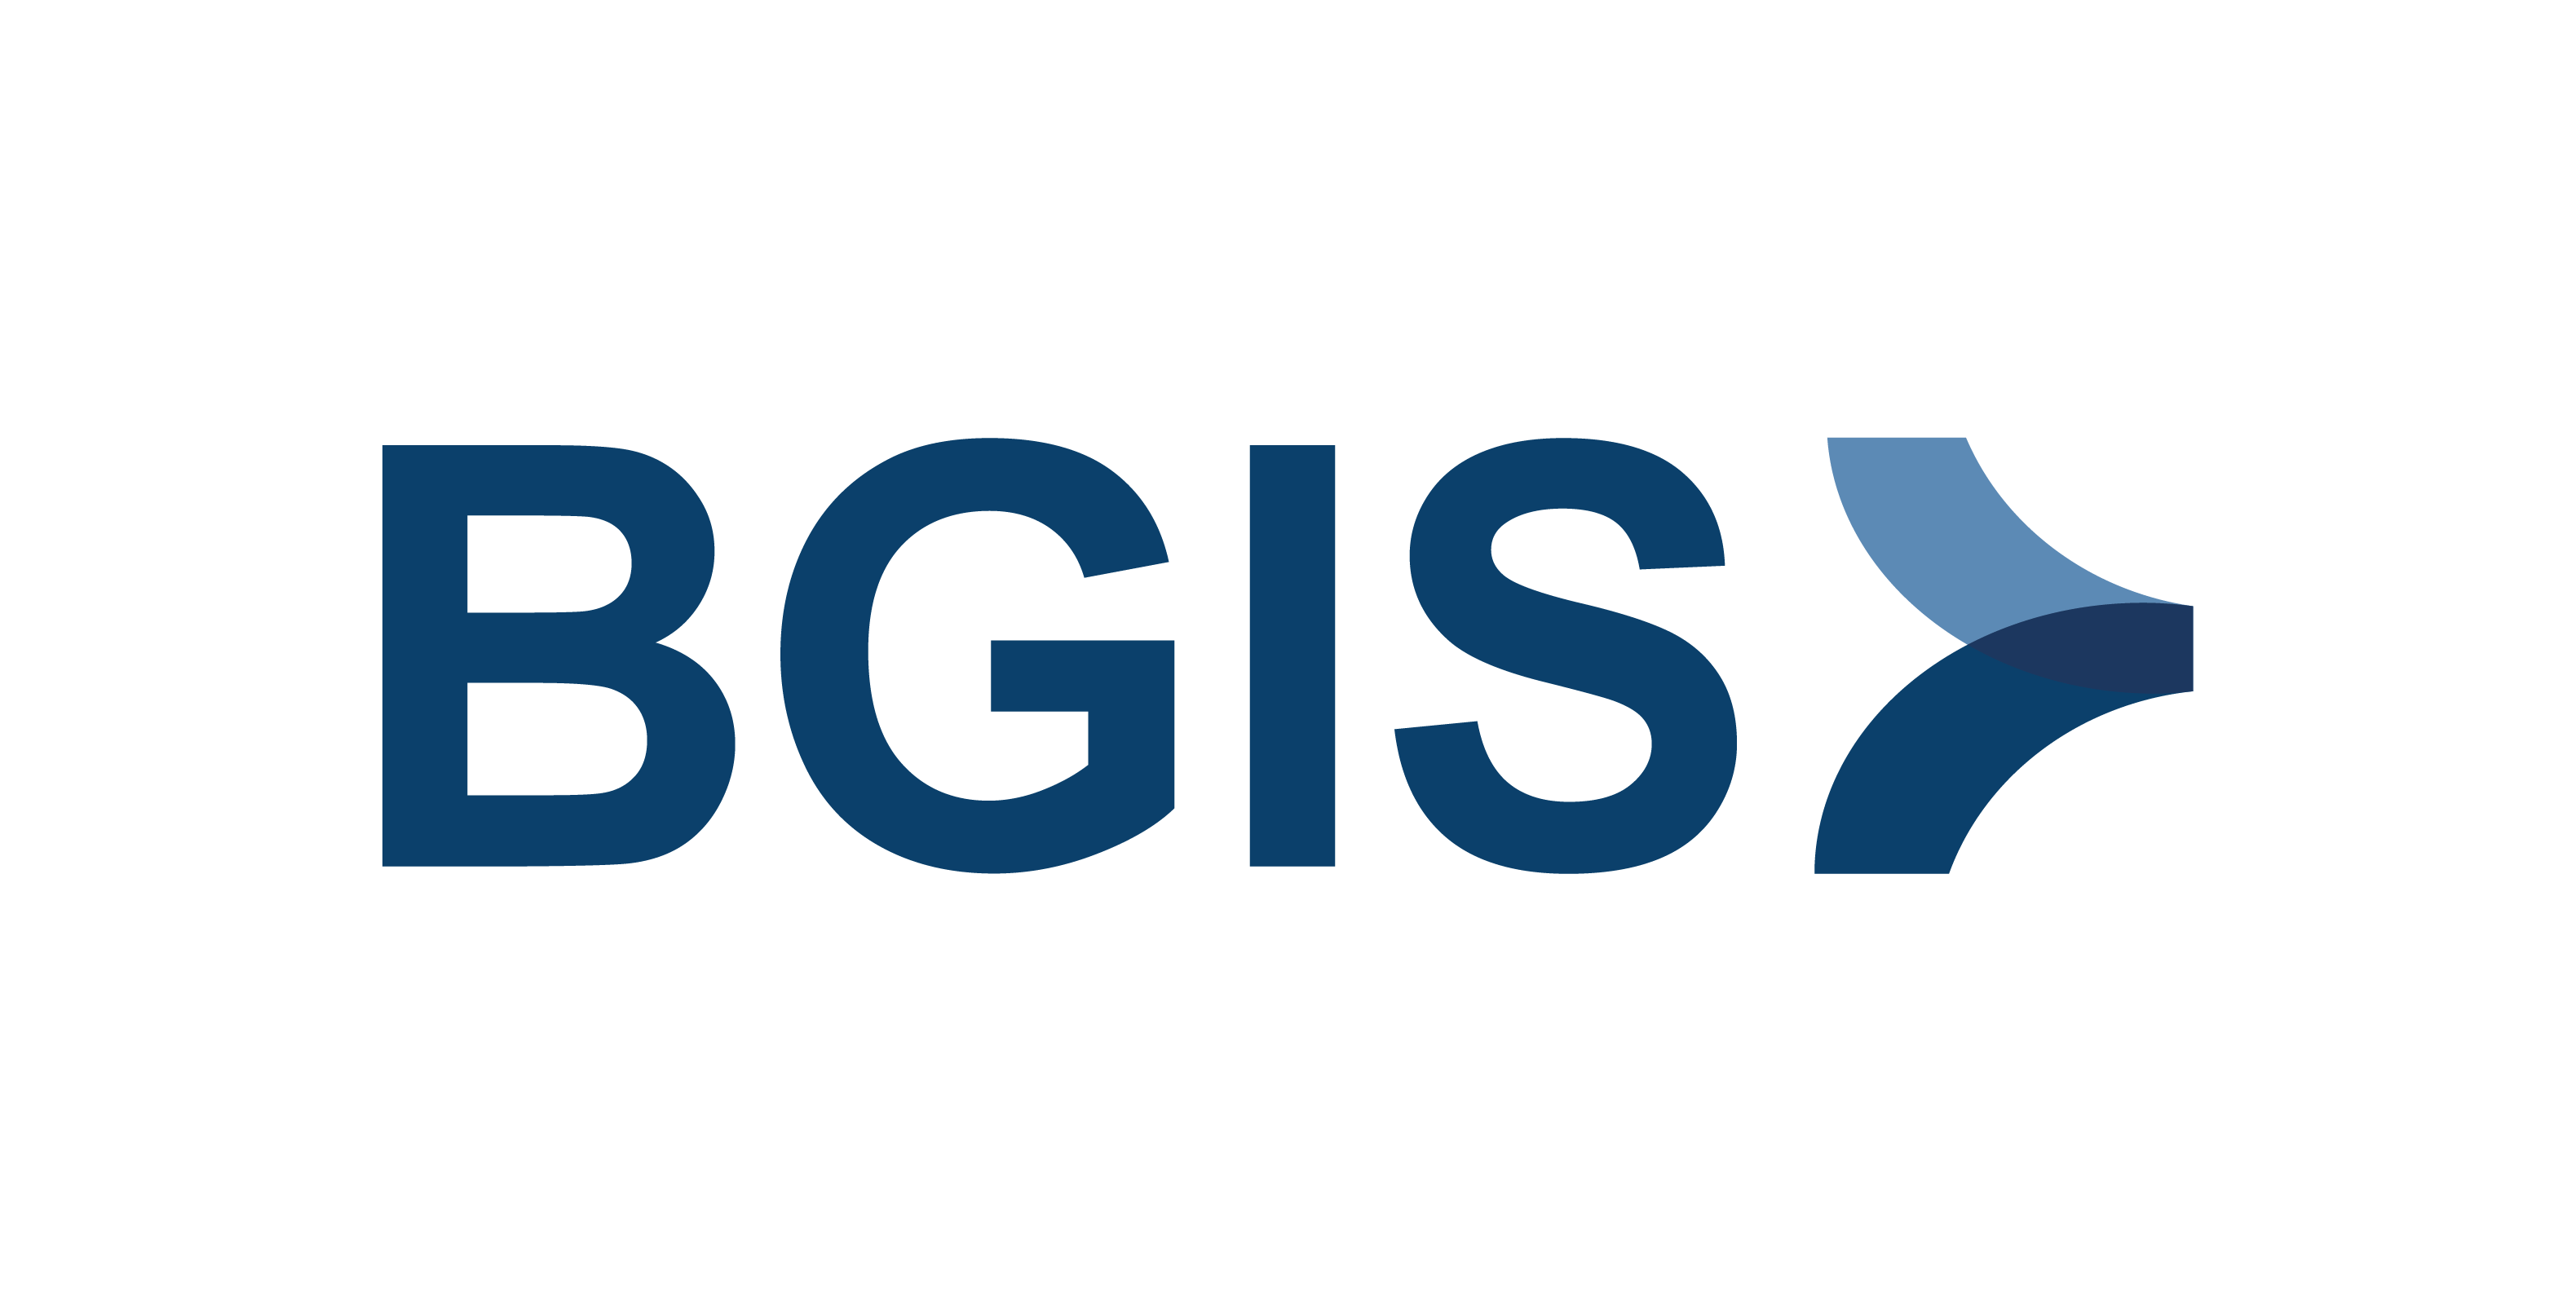 BGIS provides update